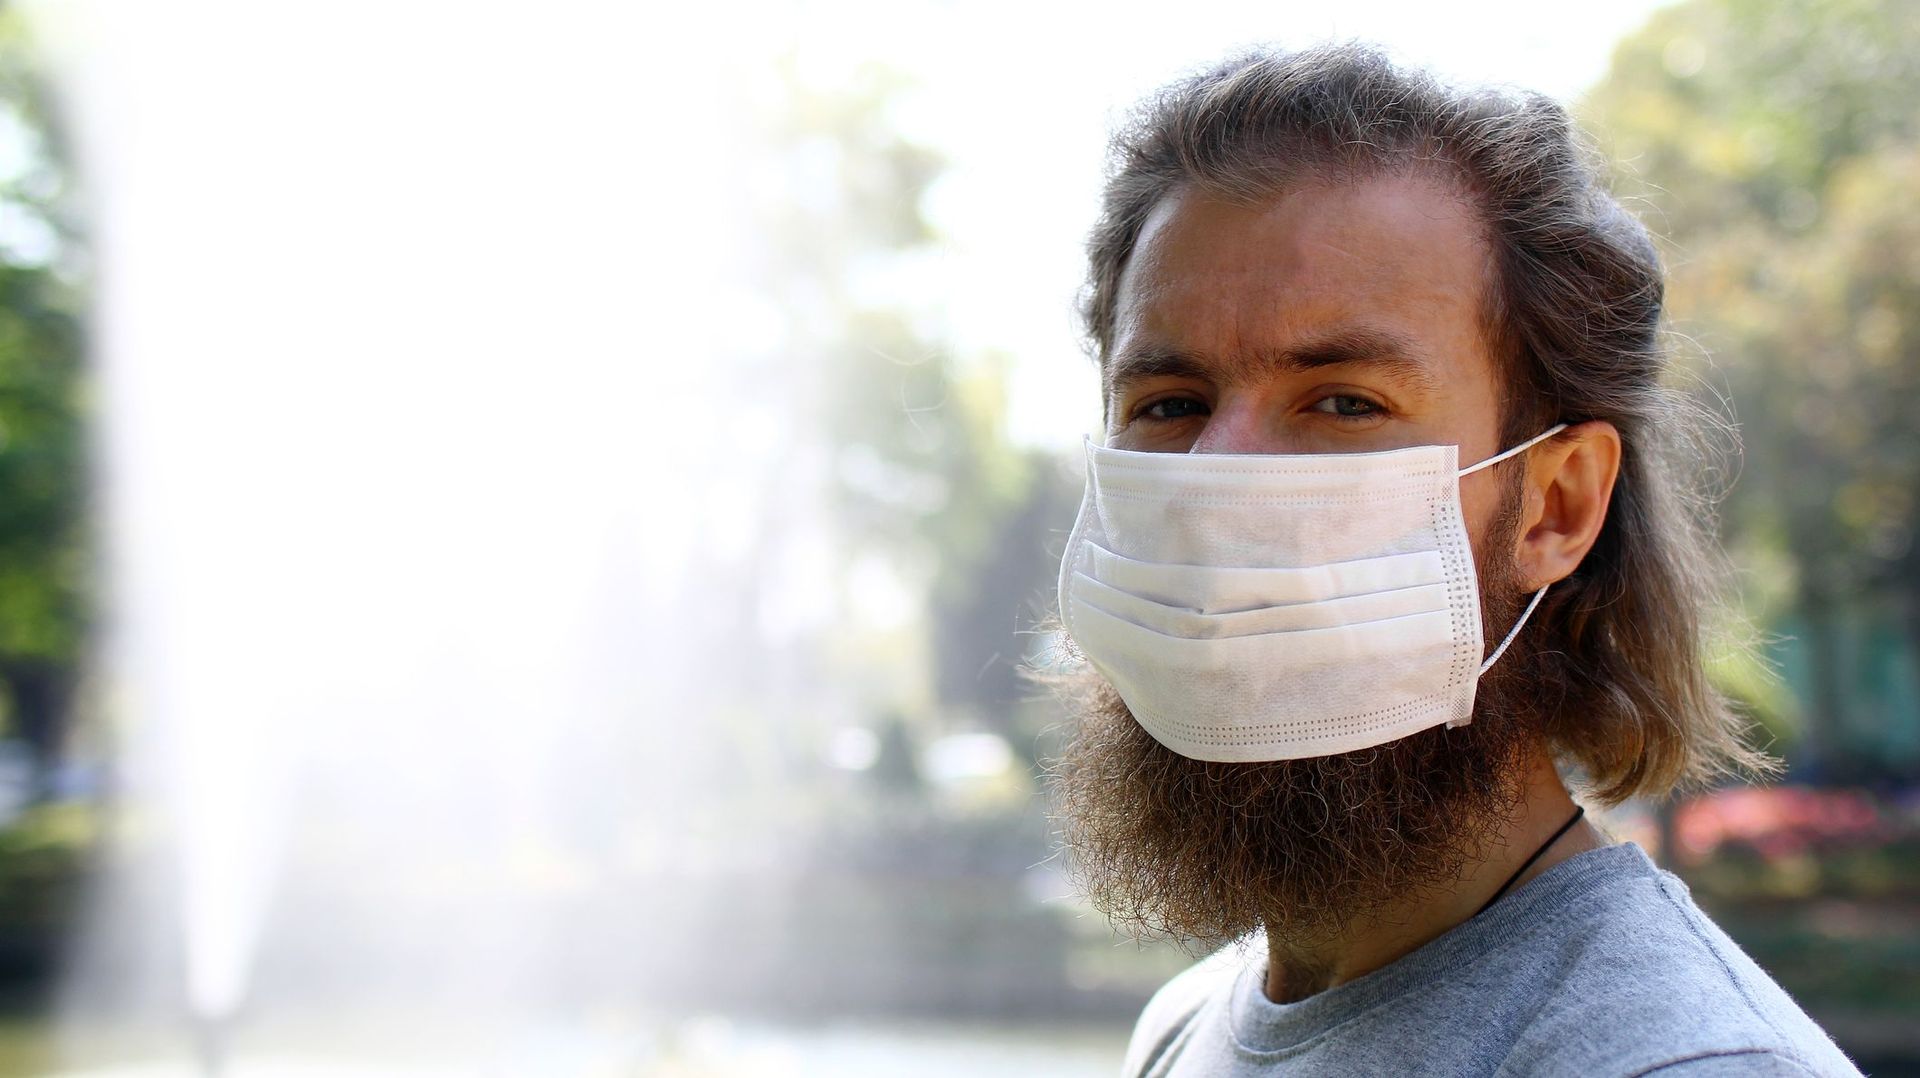 Coronavirus : la barbe, un nid à microbes qui diminue l'efficacité des masques?